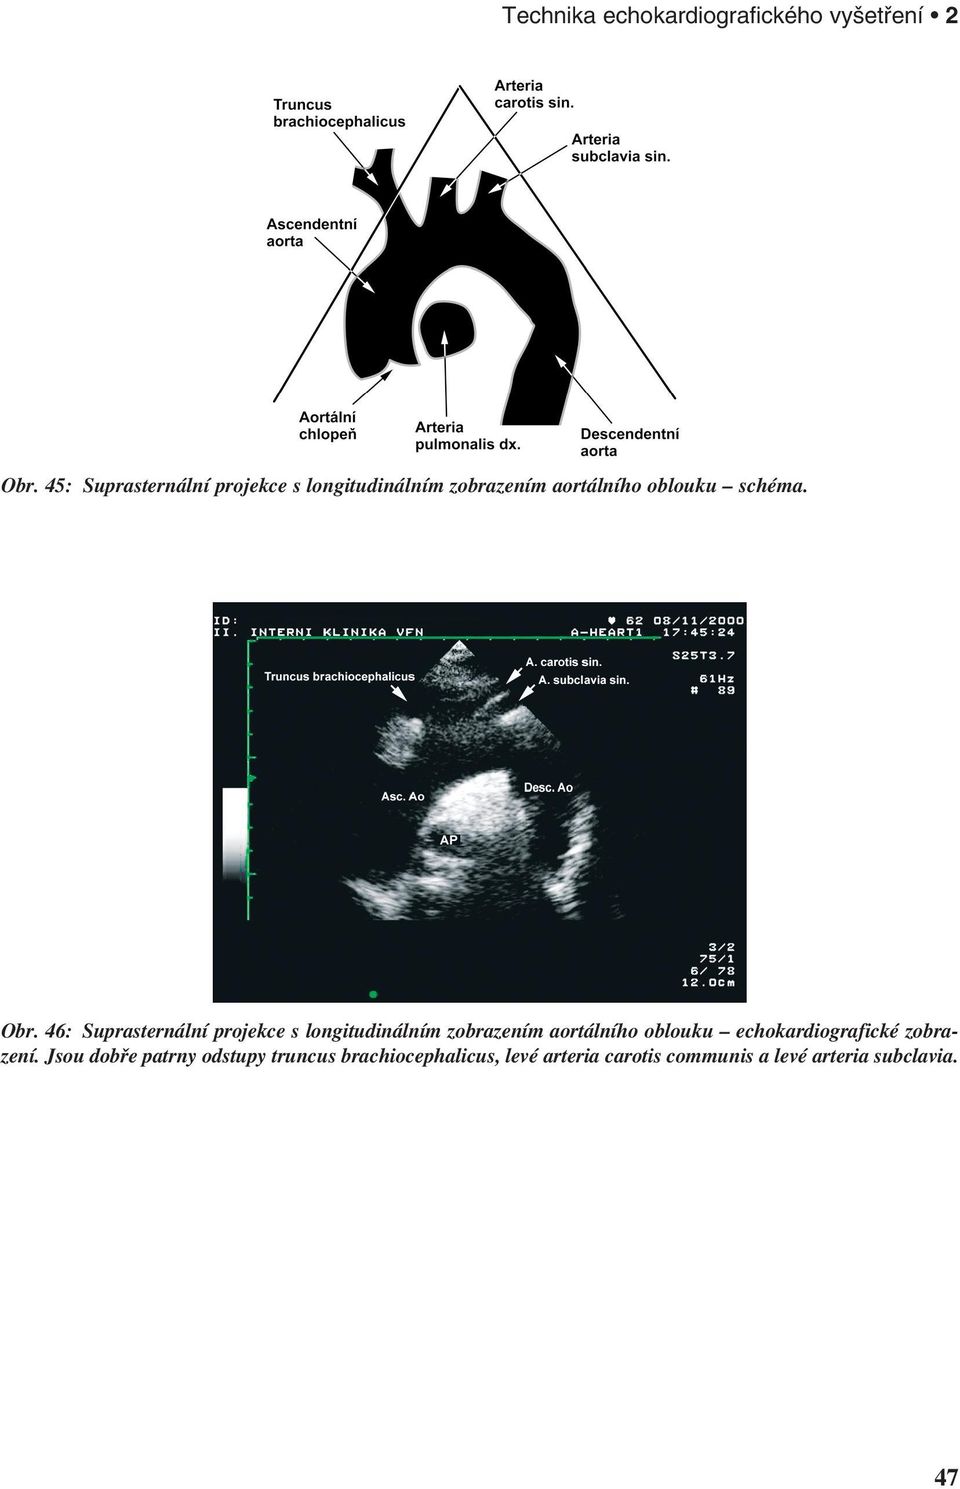 46: Suprasternální projekce s longitudinálním zobrazením aortálního oblouku